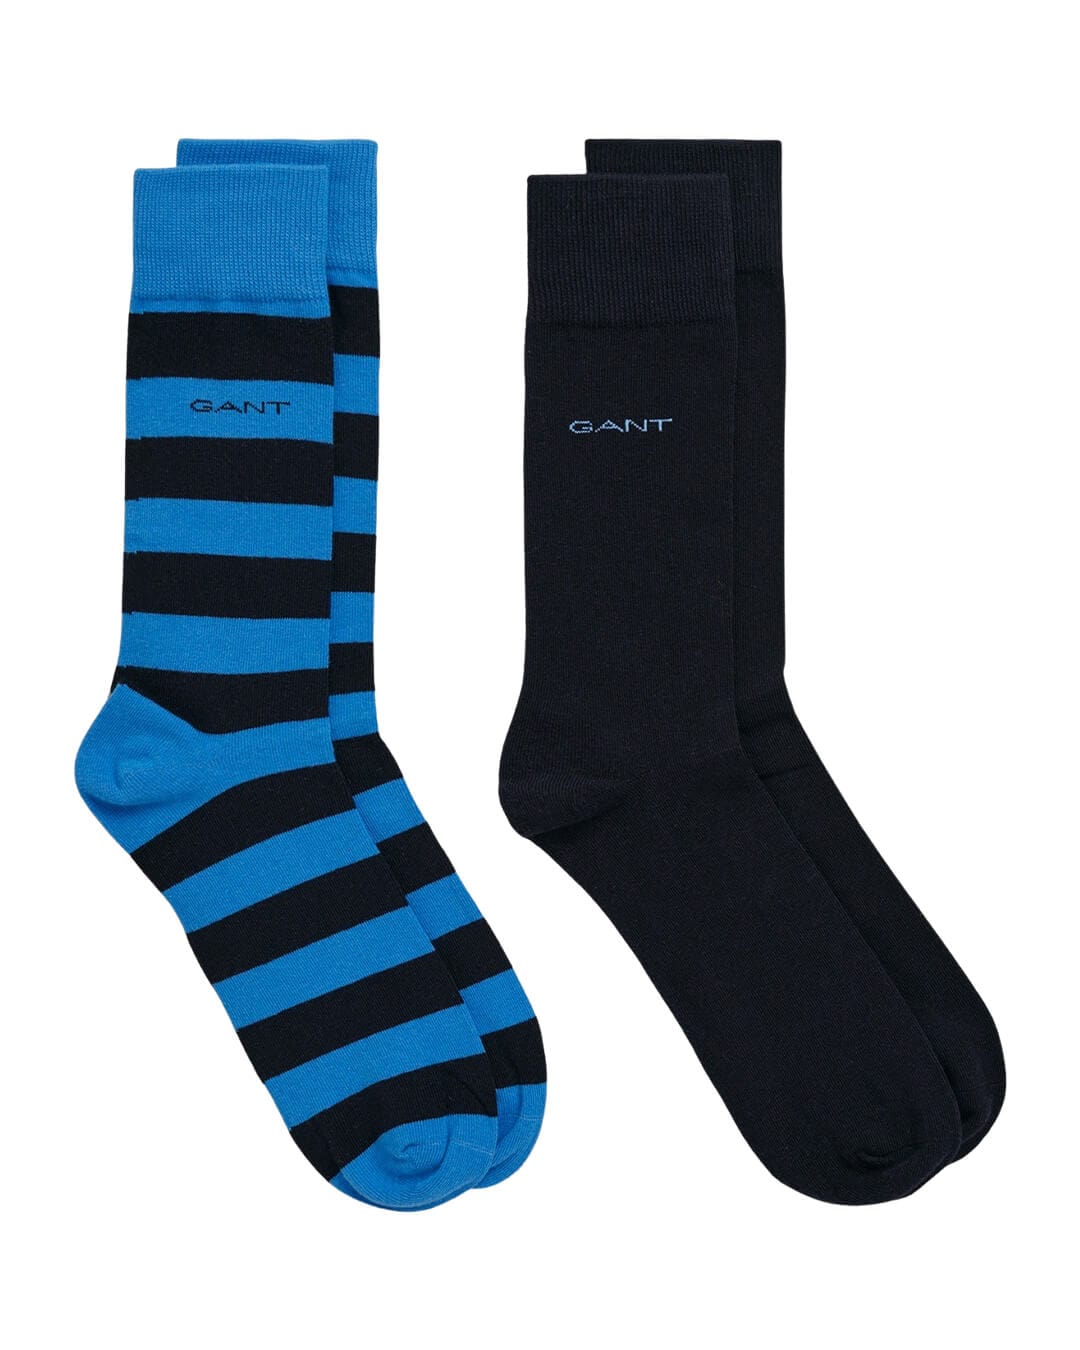 Gant Socks Gant Blue 2-Pack Barstripe & Solid Socks